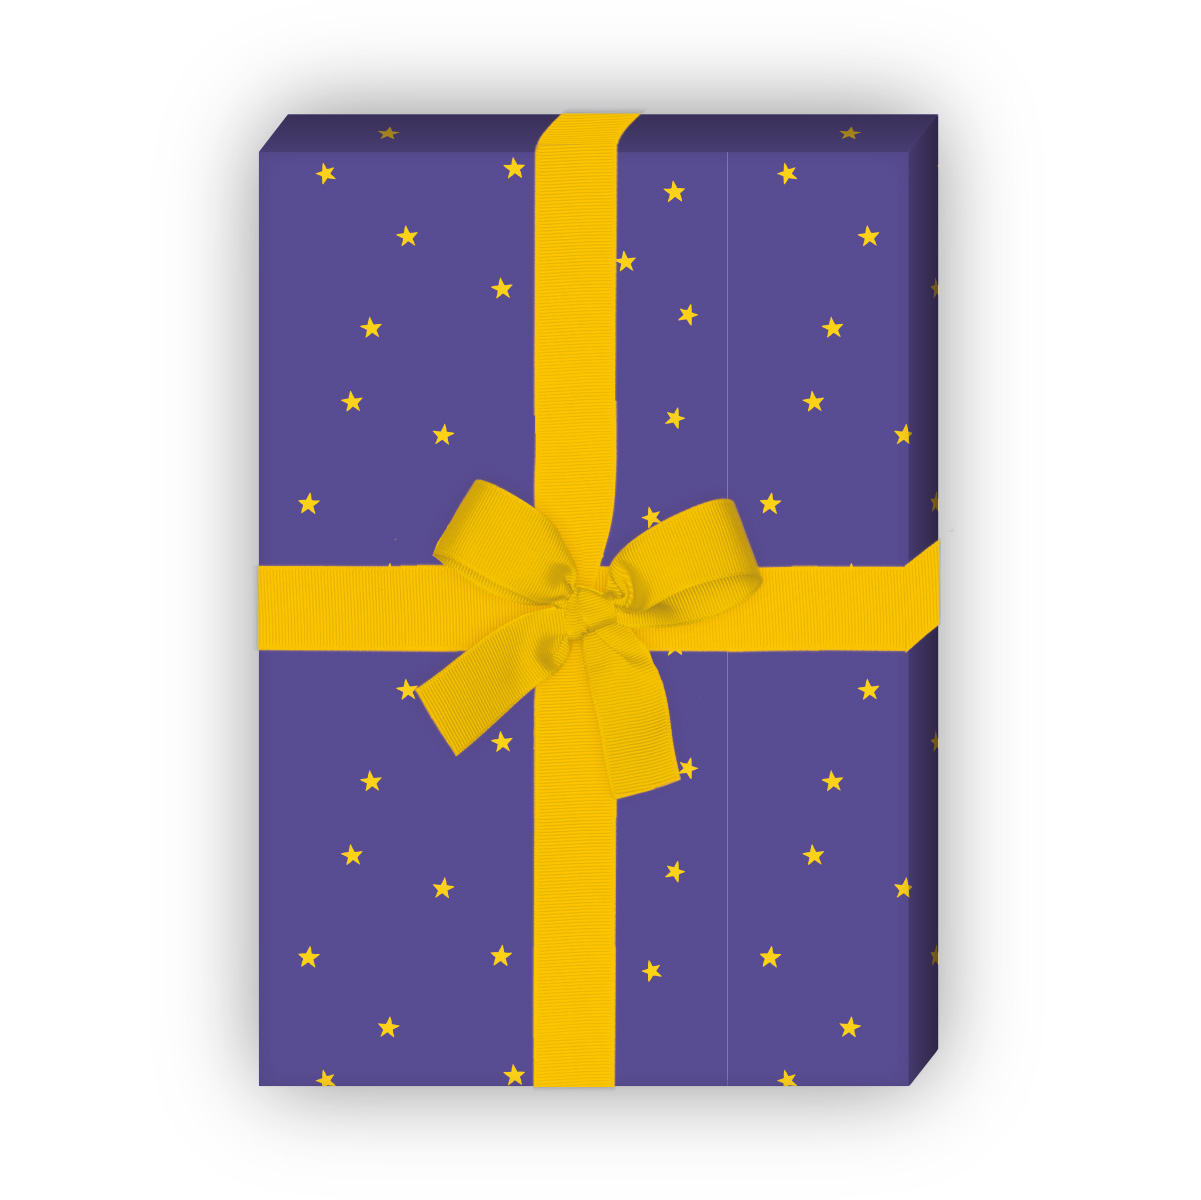 Kartenkaufrausch: Nächtliches Sternen Geschenkpapier für aus unserer Geburtstags Papeterie in multicolor